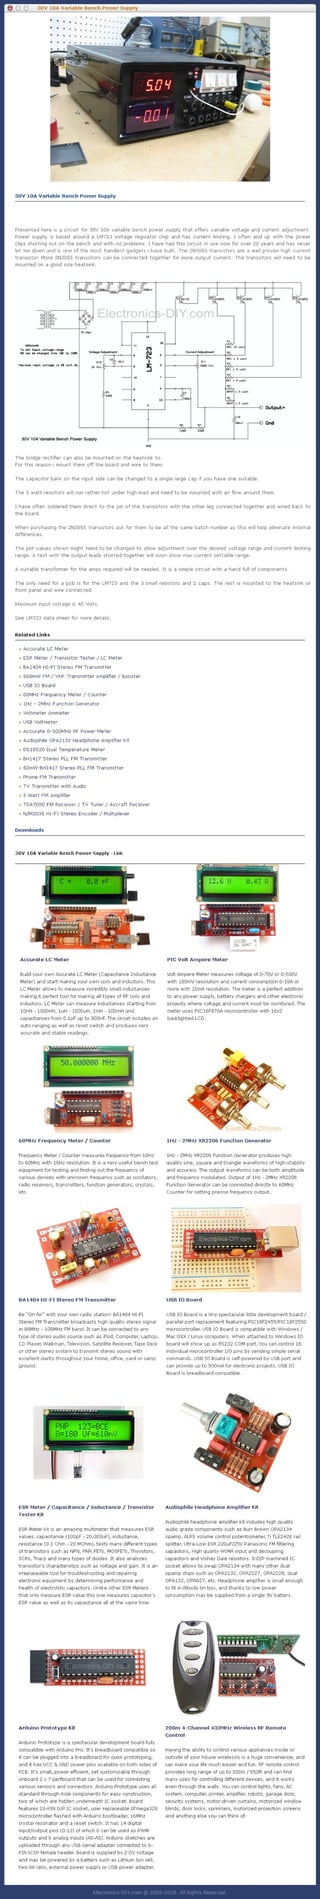 30V 10A Variable Bench Power Supply - electronics-diy.com-ok.pdf